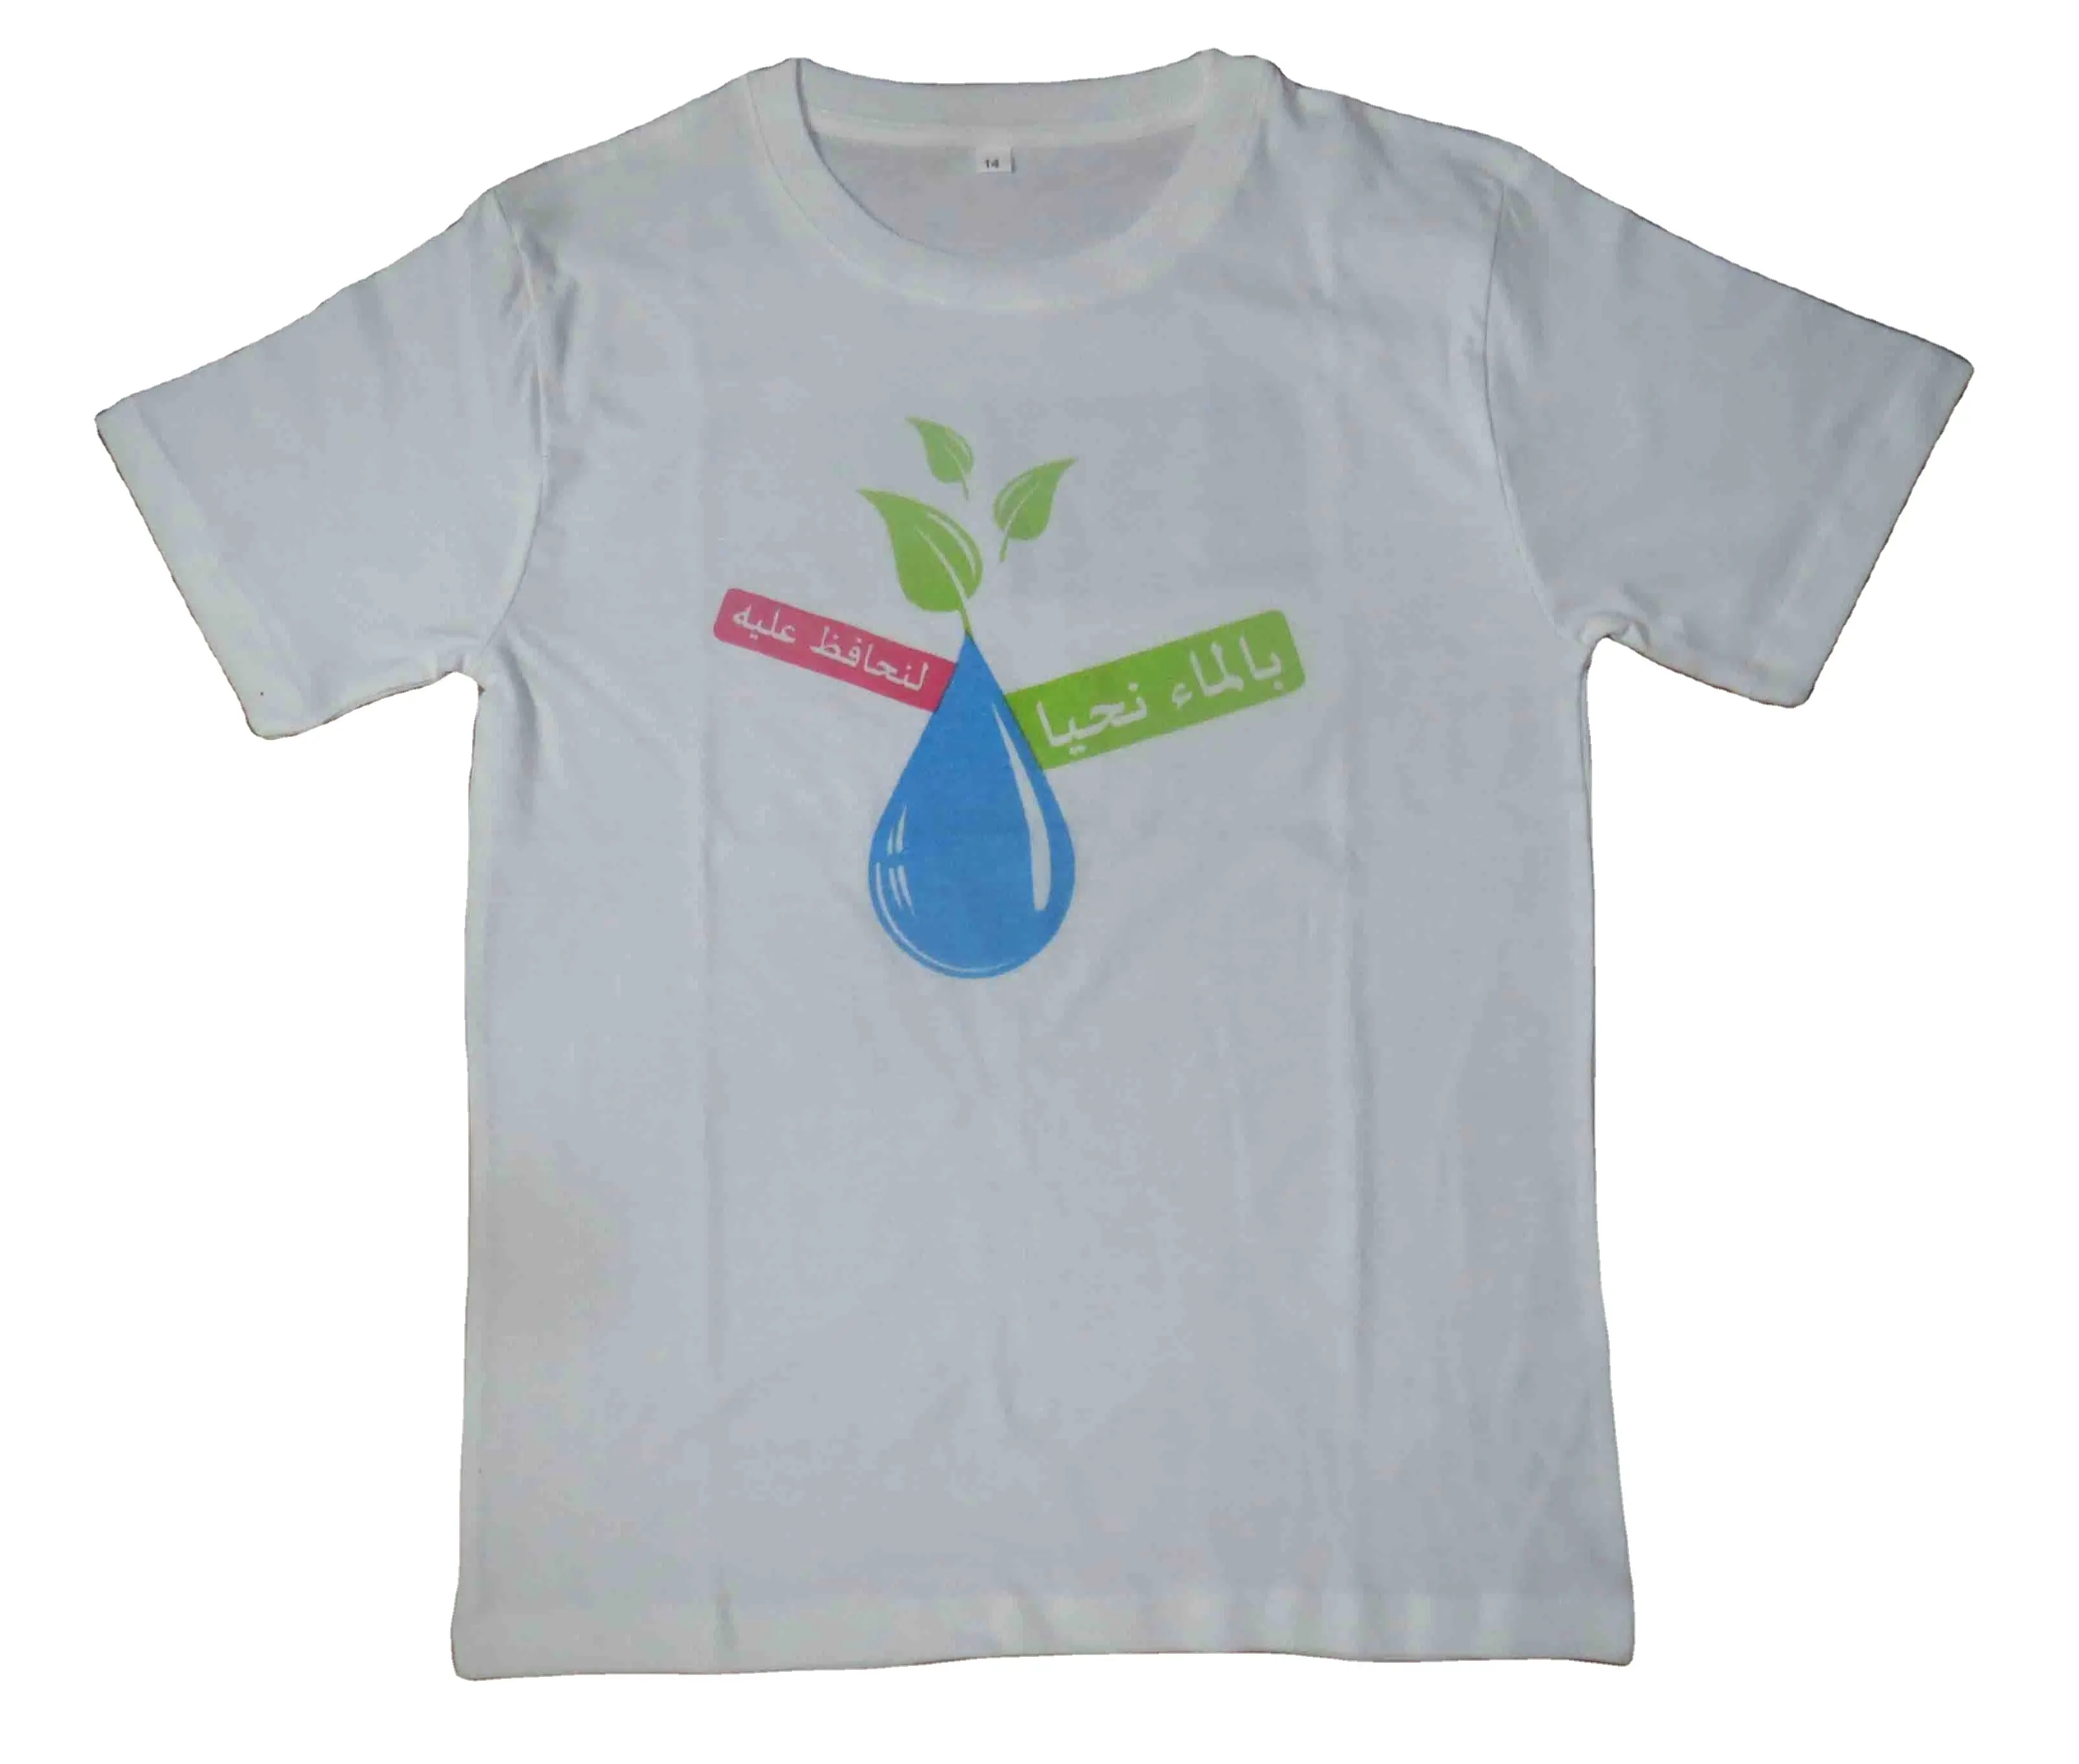 150g conception promotionnelle Logo imprimé enfants jeunes adultes Budget qualité 100% coton jersey simple tissu unisexe personnalisé t-shirt